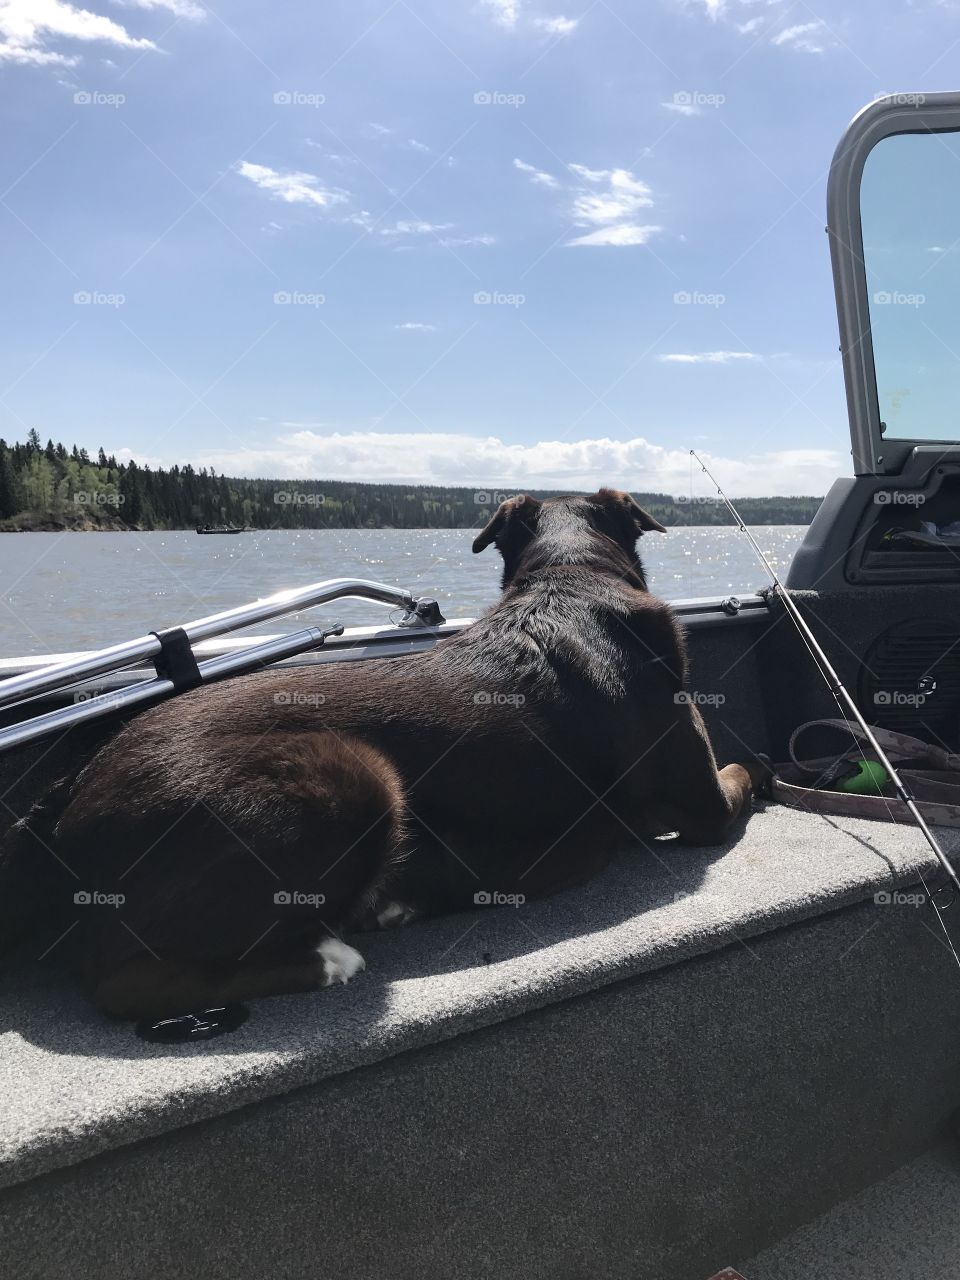 Dog fishing at a lake on a boat